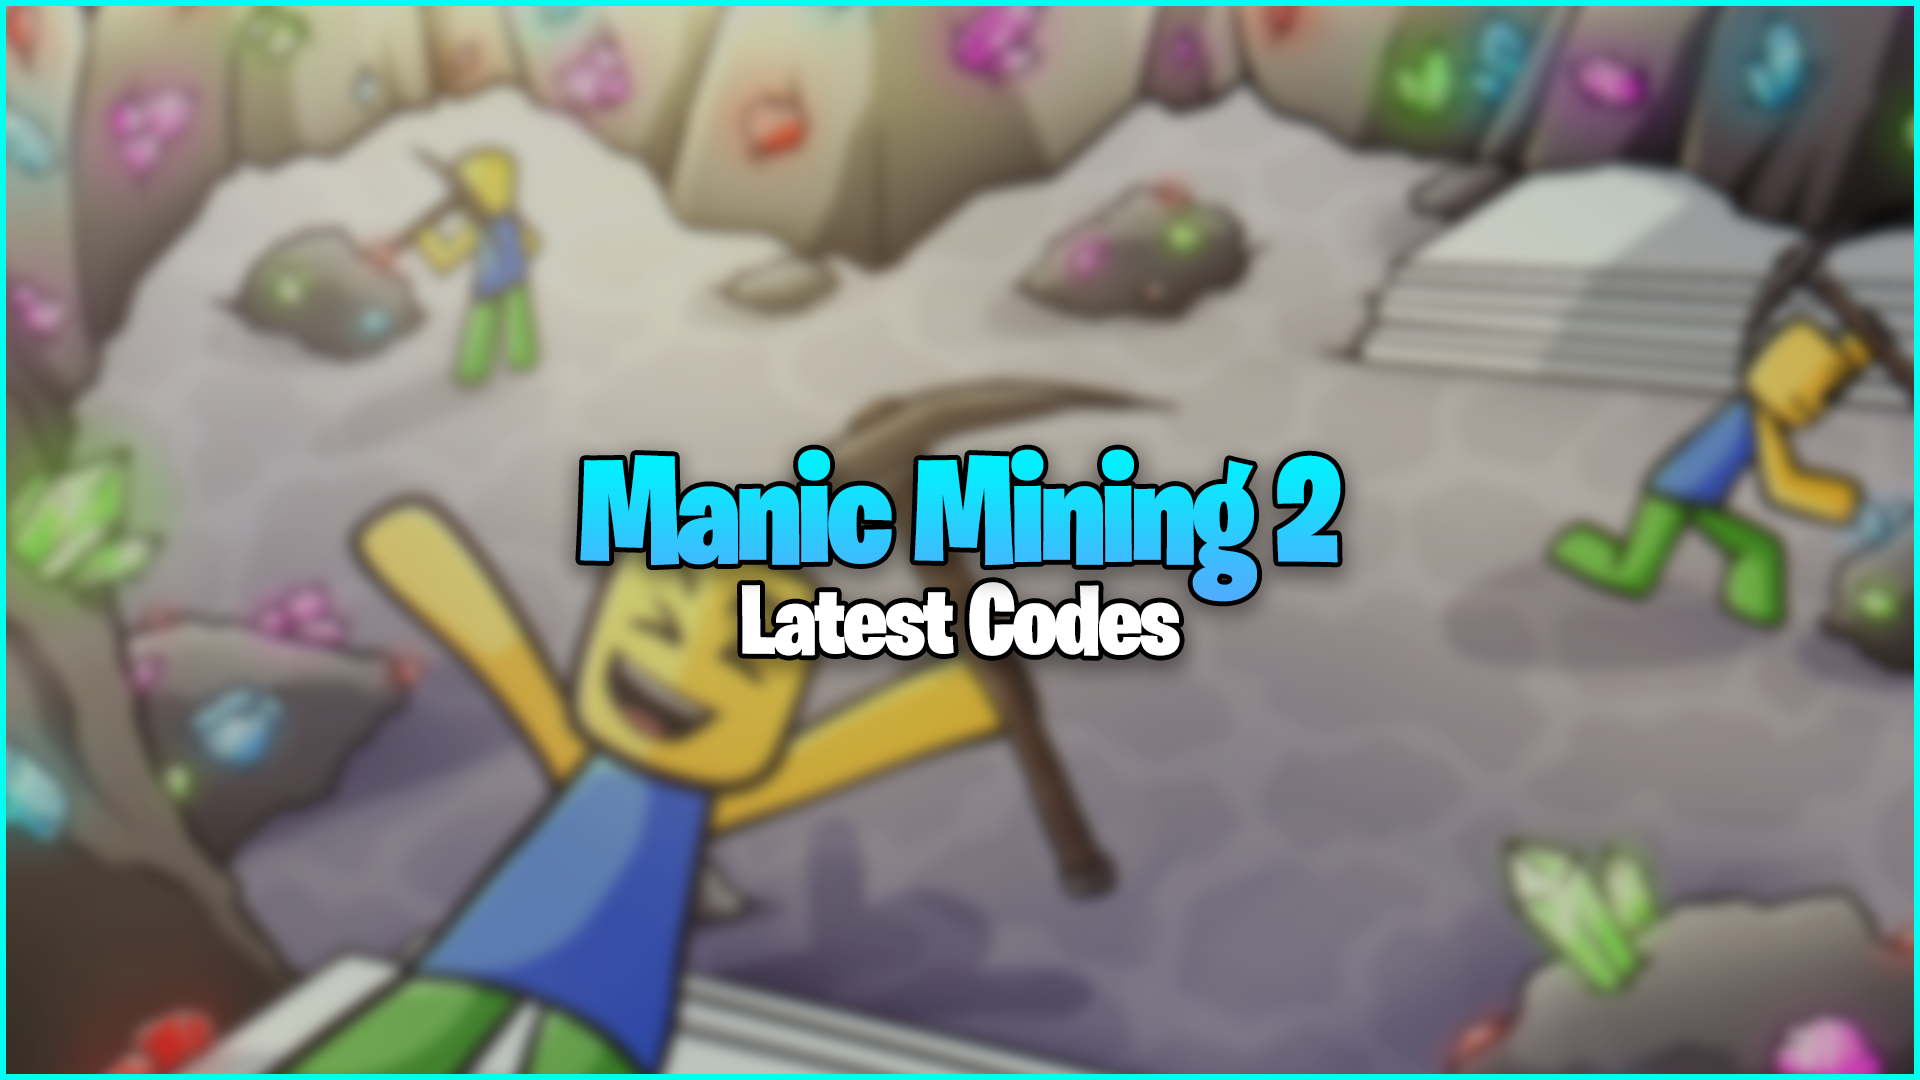 Manic Mining 2 Codes - Free gems and soulgems